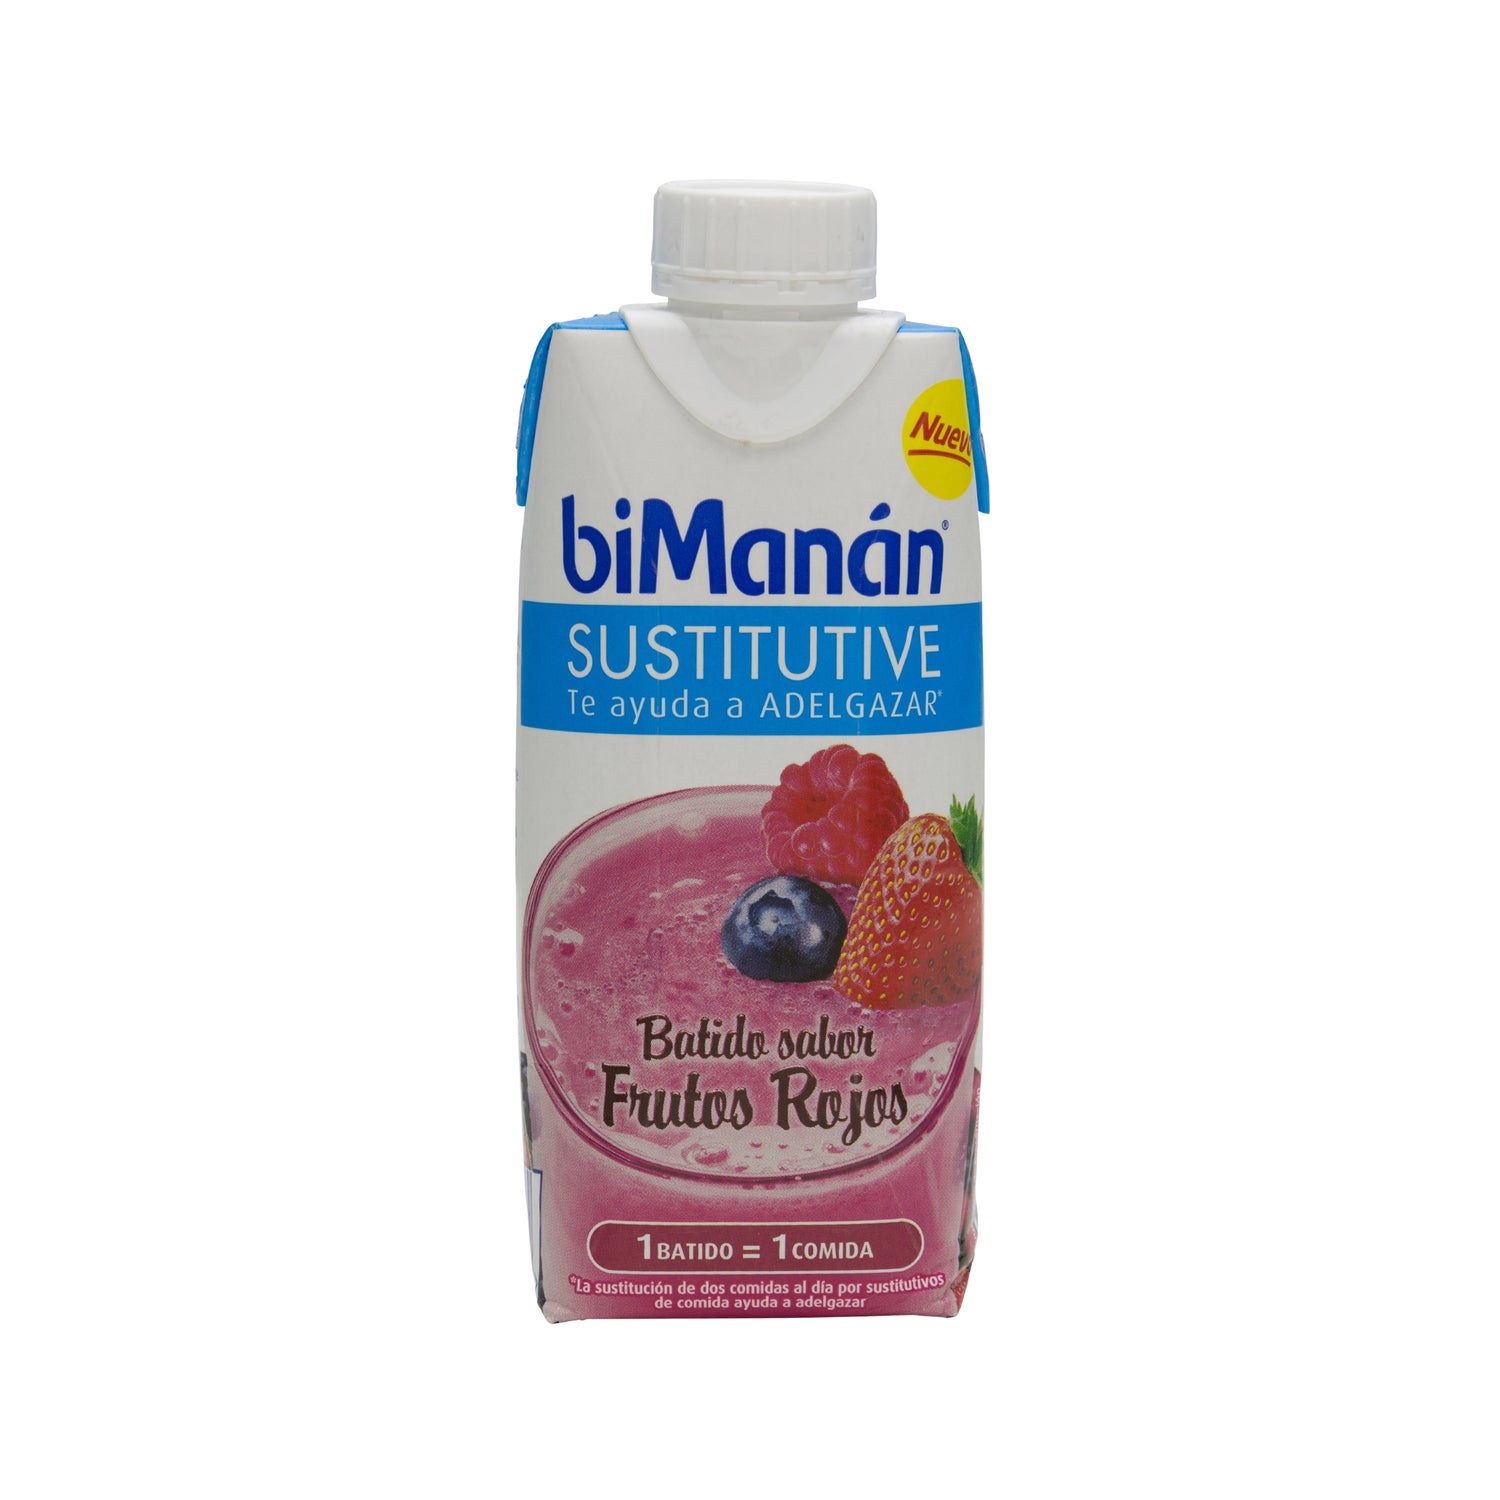 biman n sustitutive batido sabor frutos rojos 330ml